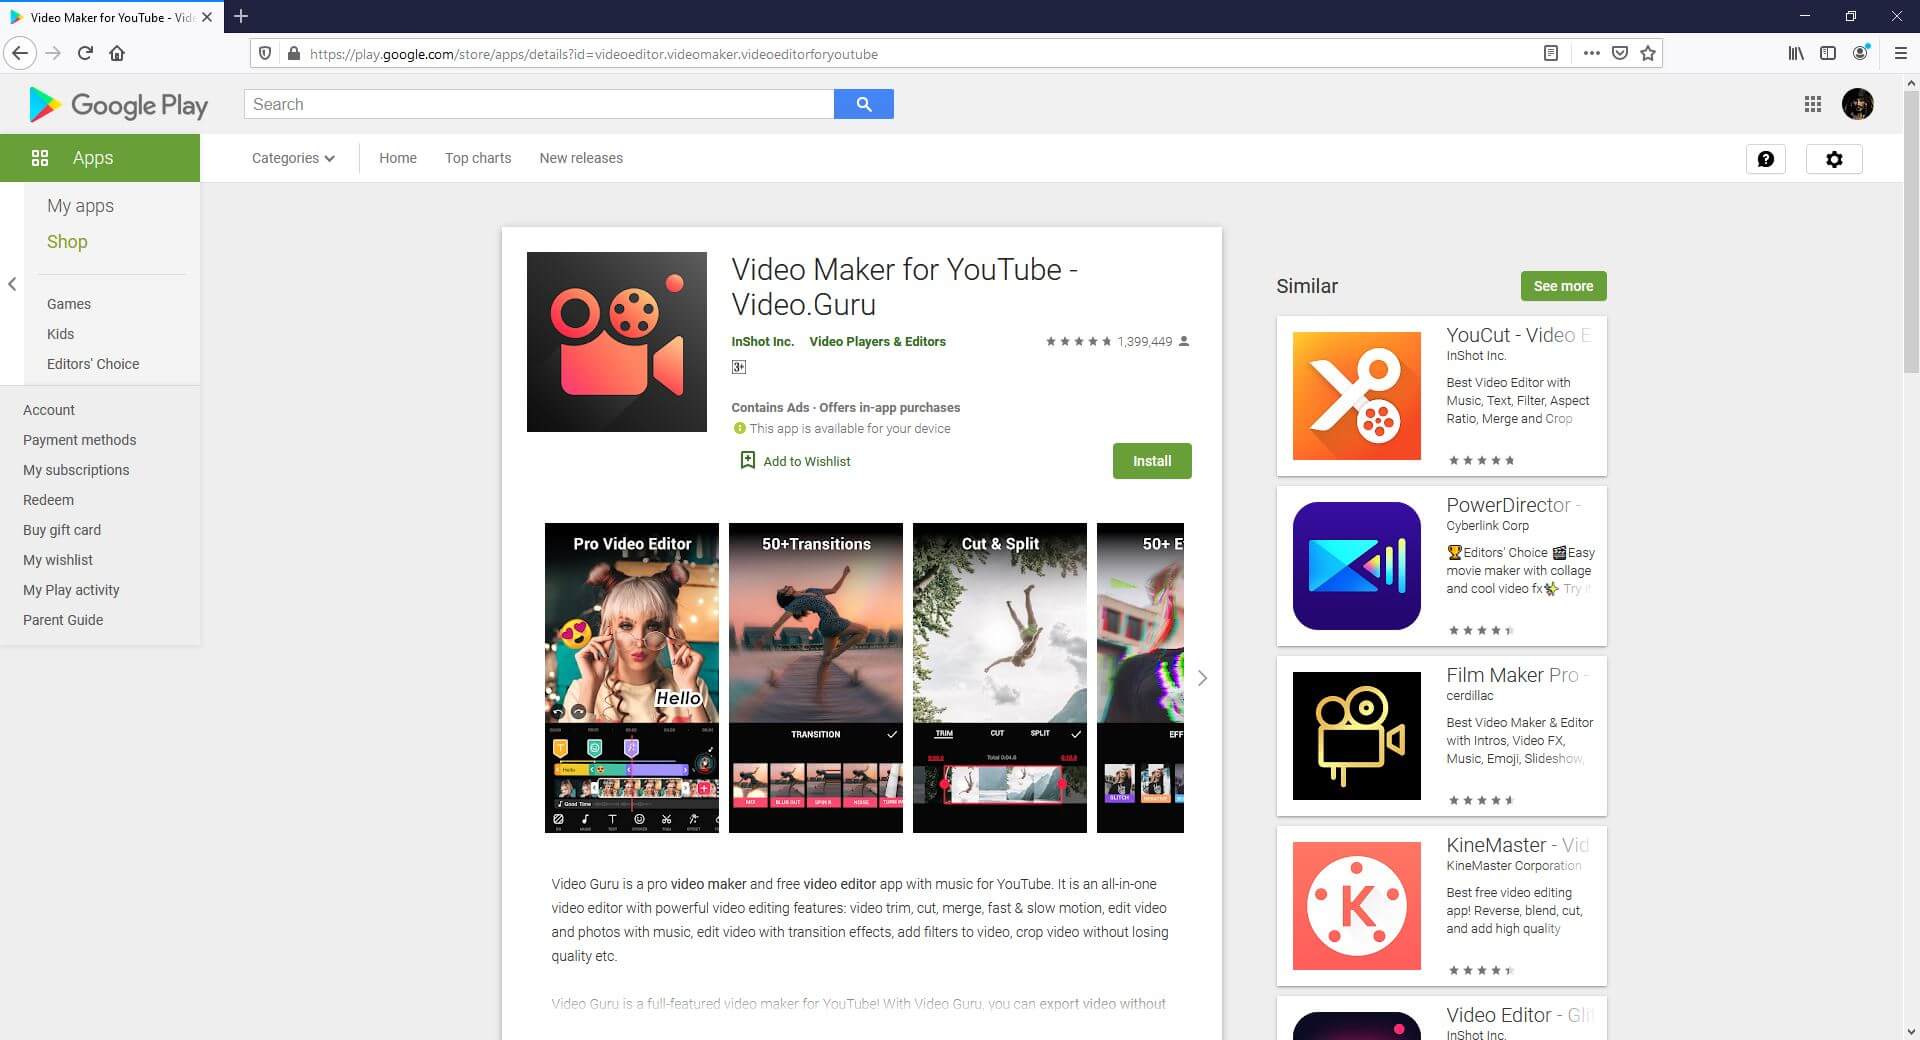 YouTube Shorts Videobearbeitungs-App Video Guru von Inshot